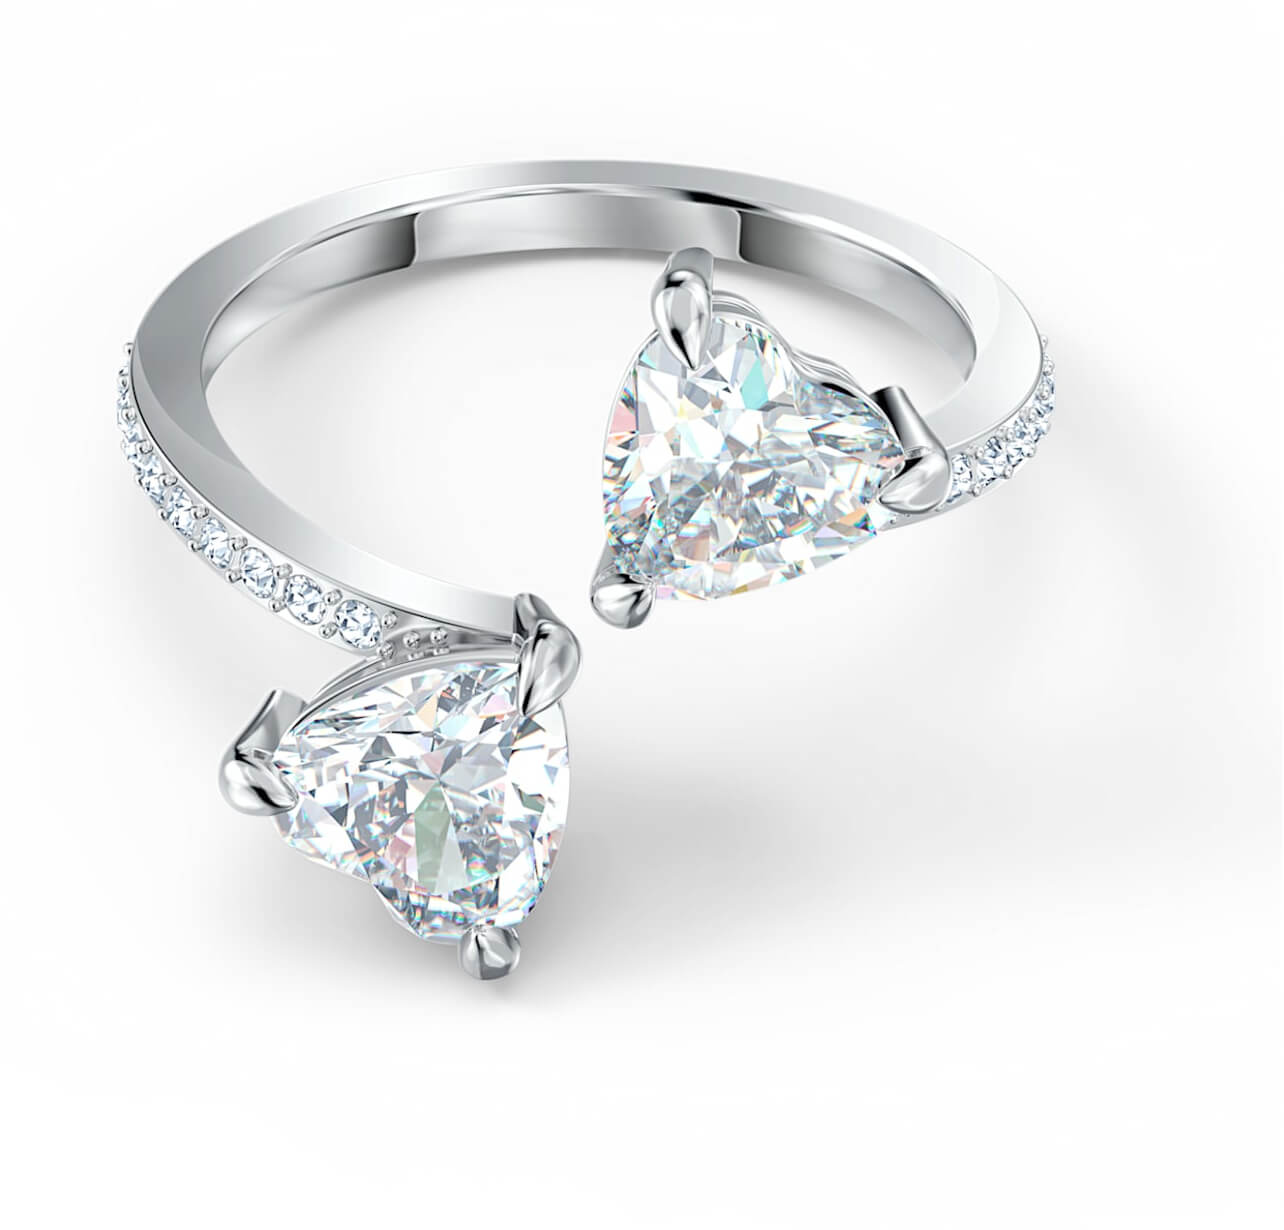 Levně Swarovski Luxusní otevřený prsten s krystaly Swarovski Attract Soul 5535191 60 mm